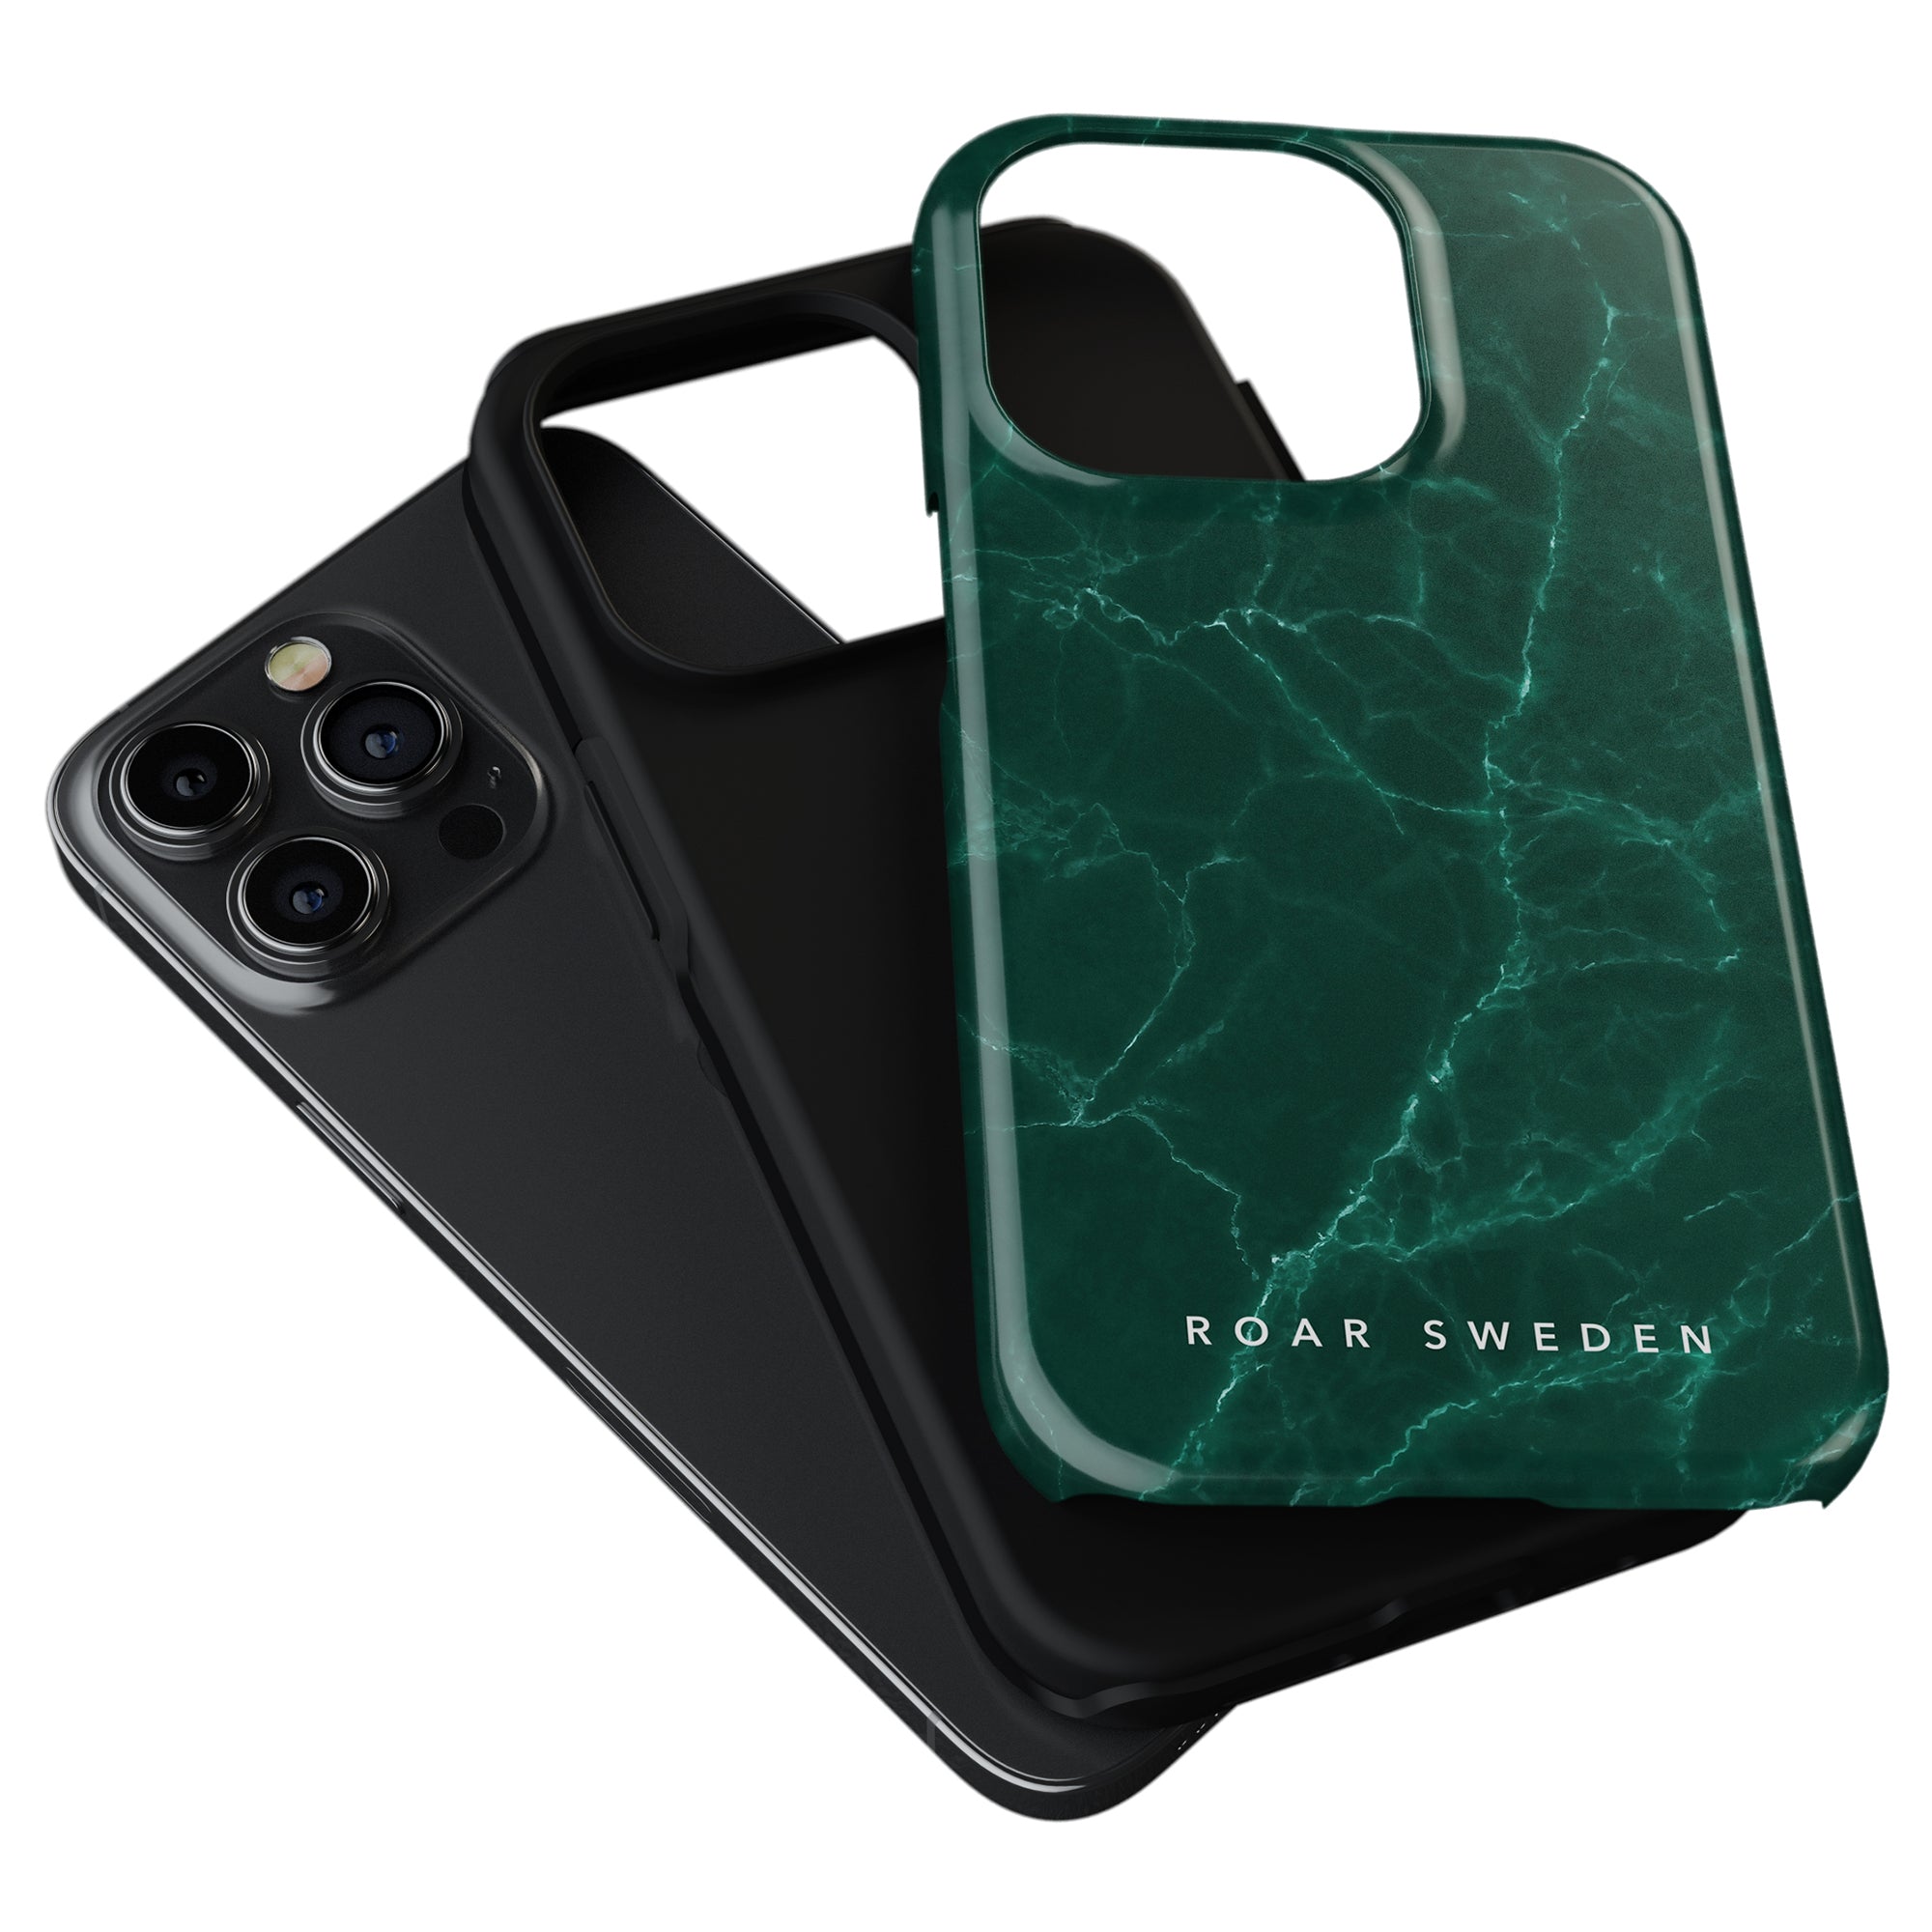 Ett grönt marmor Ripples - Tough Case mobilfodral för iPhone 11. Detta mobilfodral är tillverkat av ett slitstarkt material som skyddar din telefon från repor, stötar och smuts. Fallet